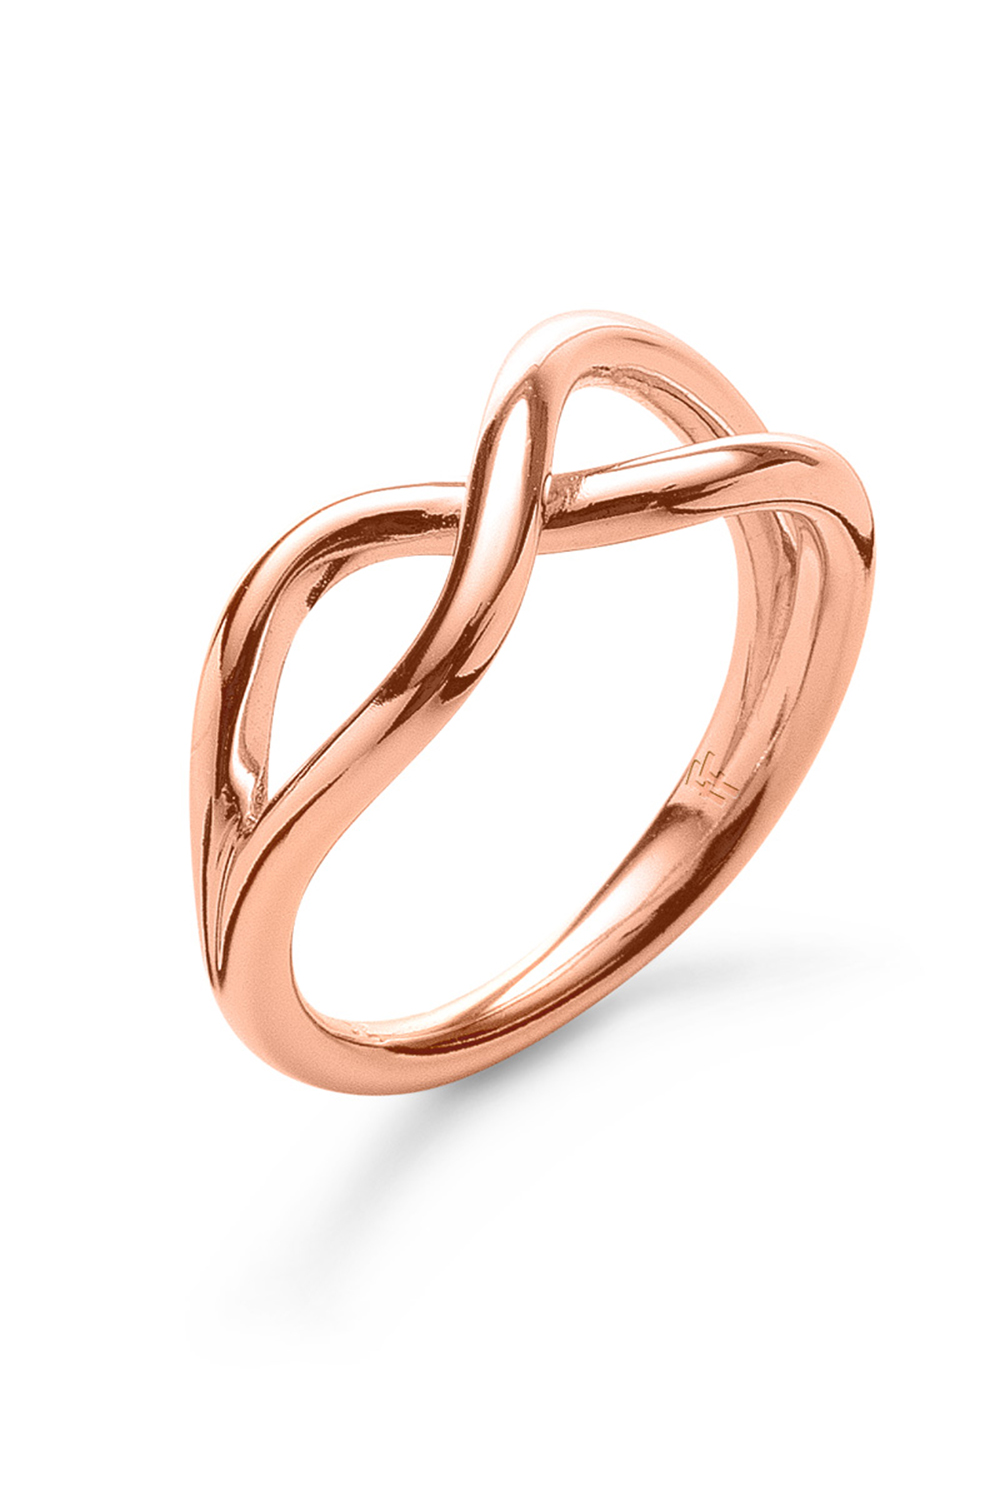 Γυναικεία/Αξεσουάρ/Κοσμήματα/Δαχτυλίδια FOLLI FOLLIE - Γυναικείο δαχτυλίδι από ορείχαλκο FOLLI FOLLIE FLUIDITY ροζ χρυσό